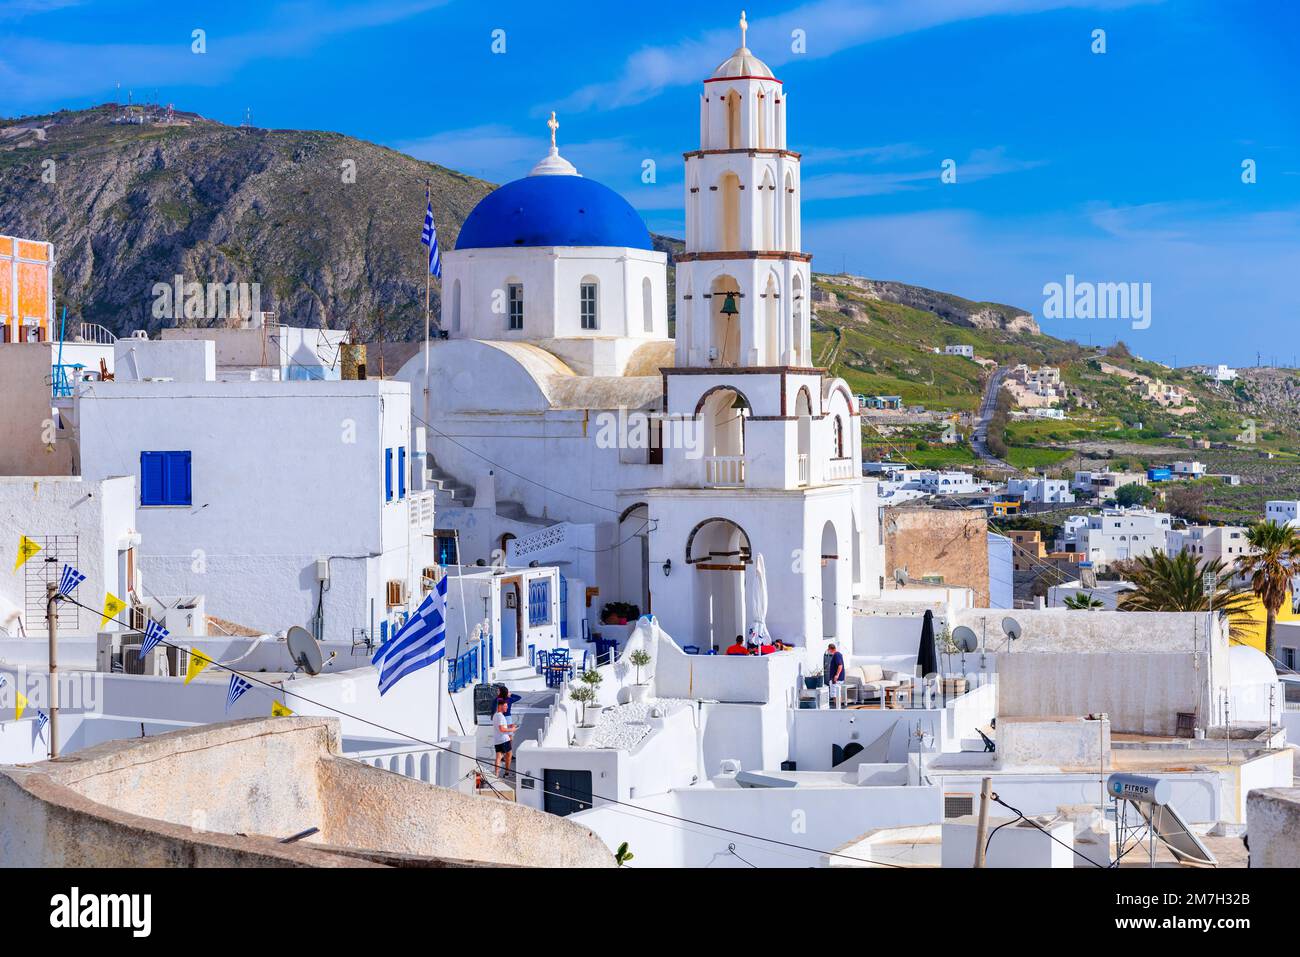 Île de Santorin, Grèce. Maisons et églises traditionnelles et célèbres avec des dômes bleus sur la caldeira, mer Egée Banque D'Images